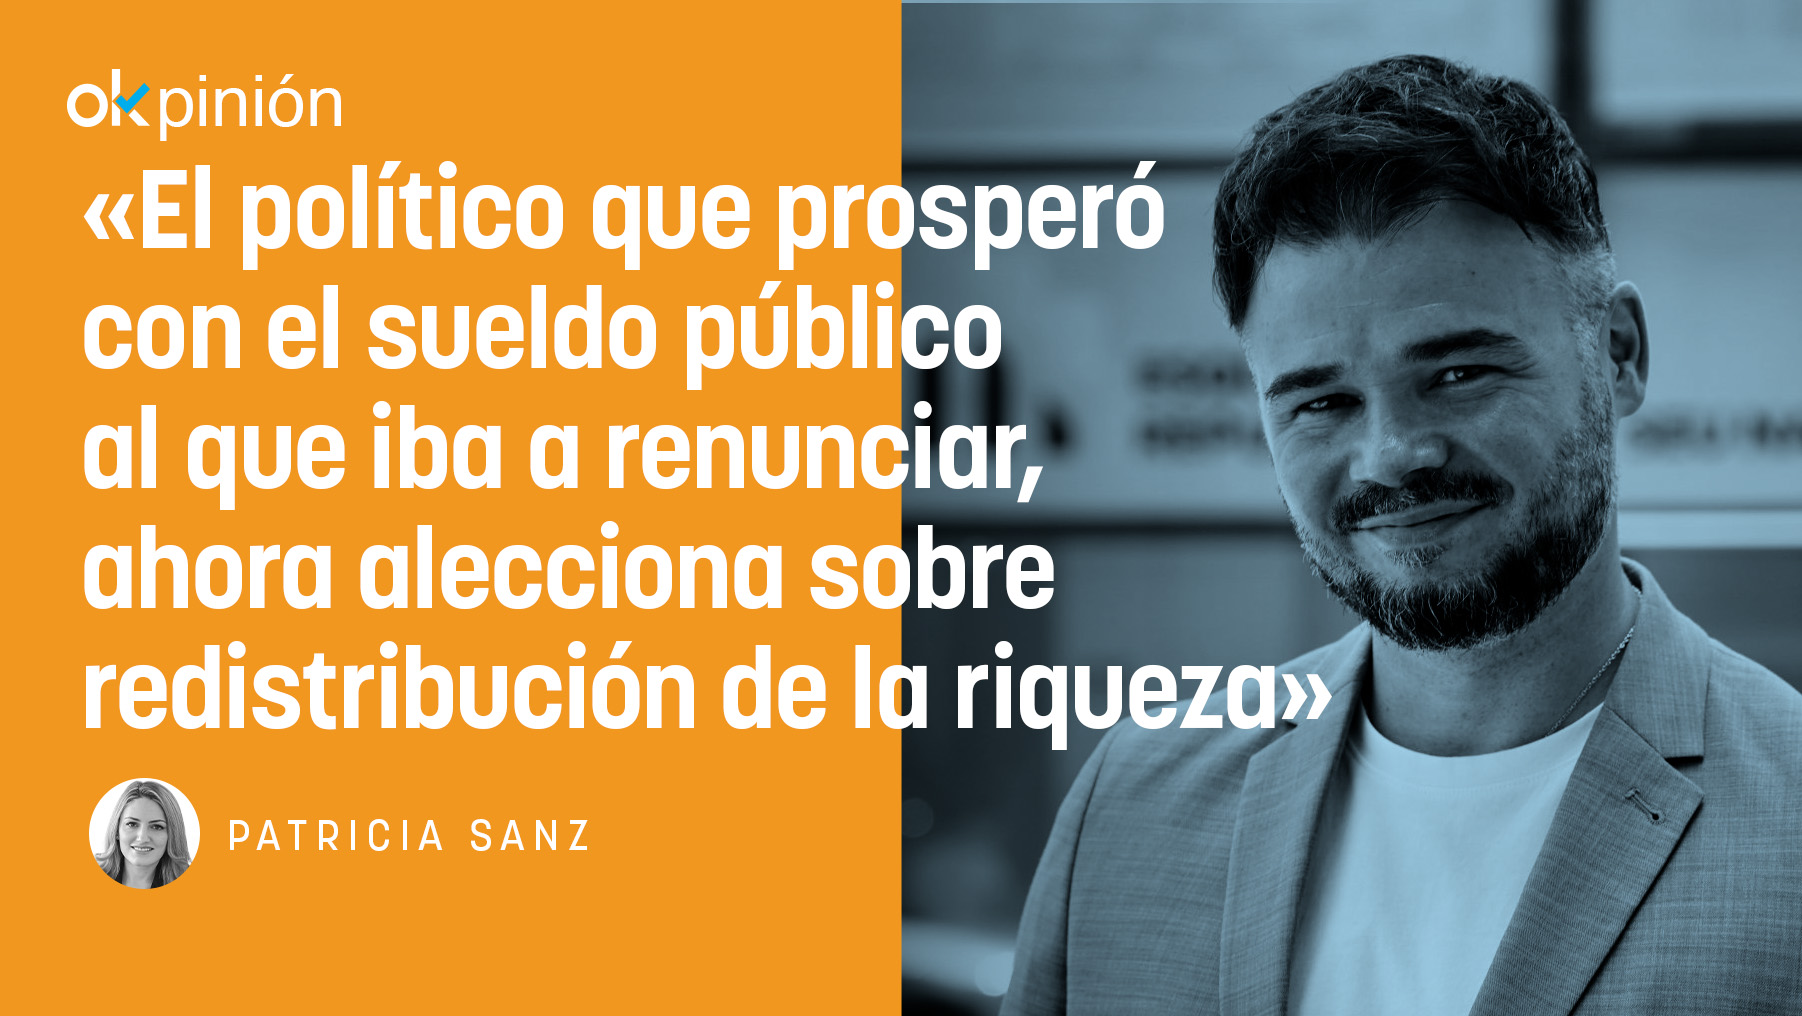 Gabriel Rufián aprovechó el debate en televisión para aleccionar sobre redistribución de la riqueza